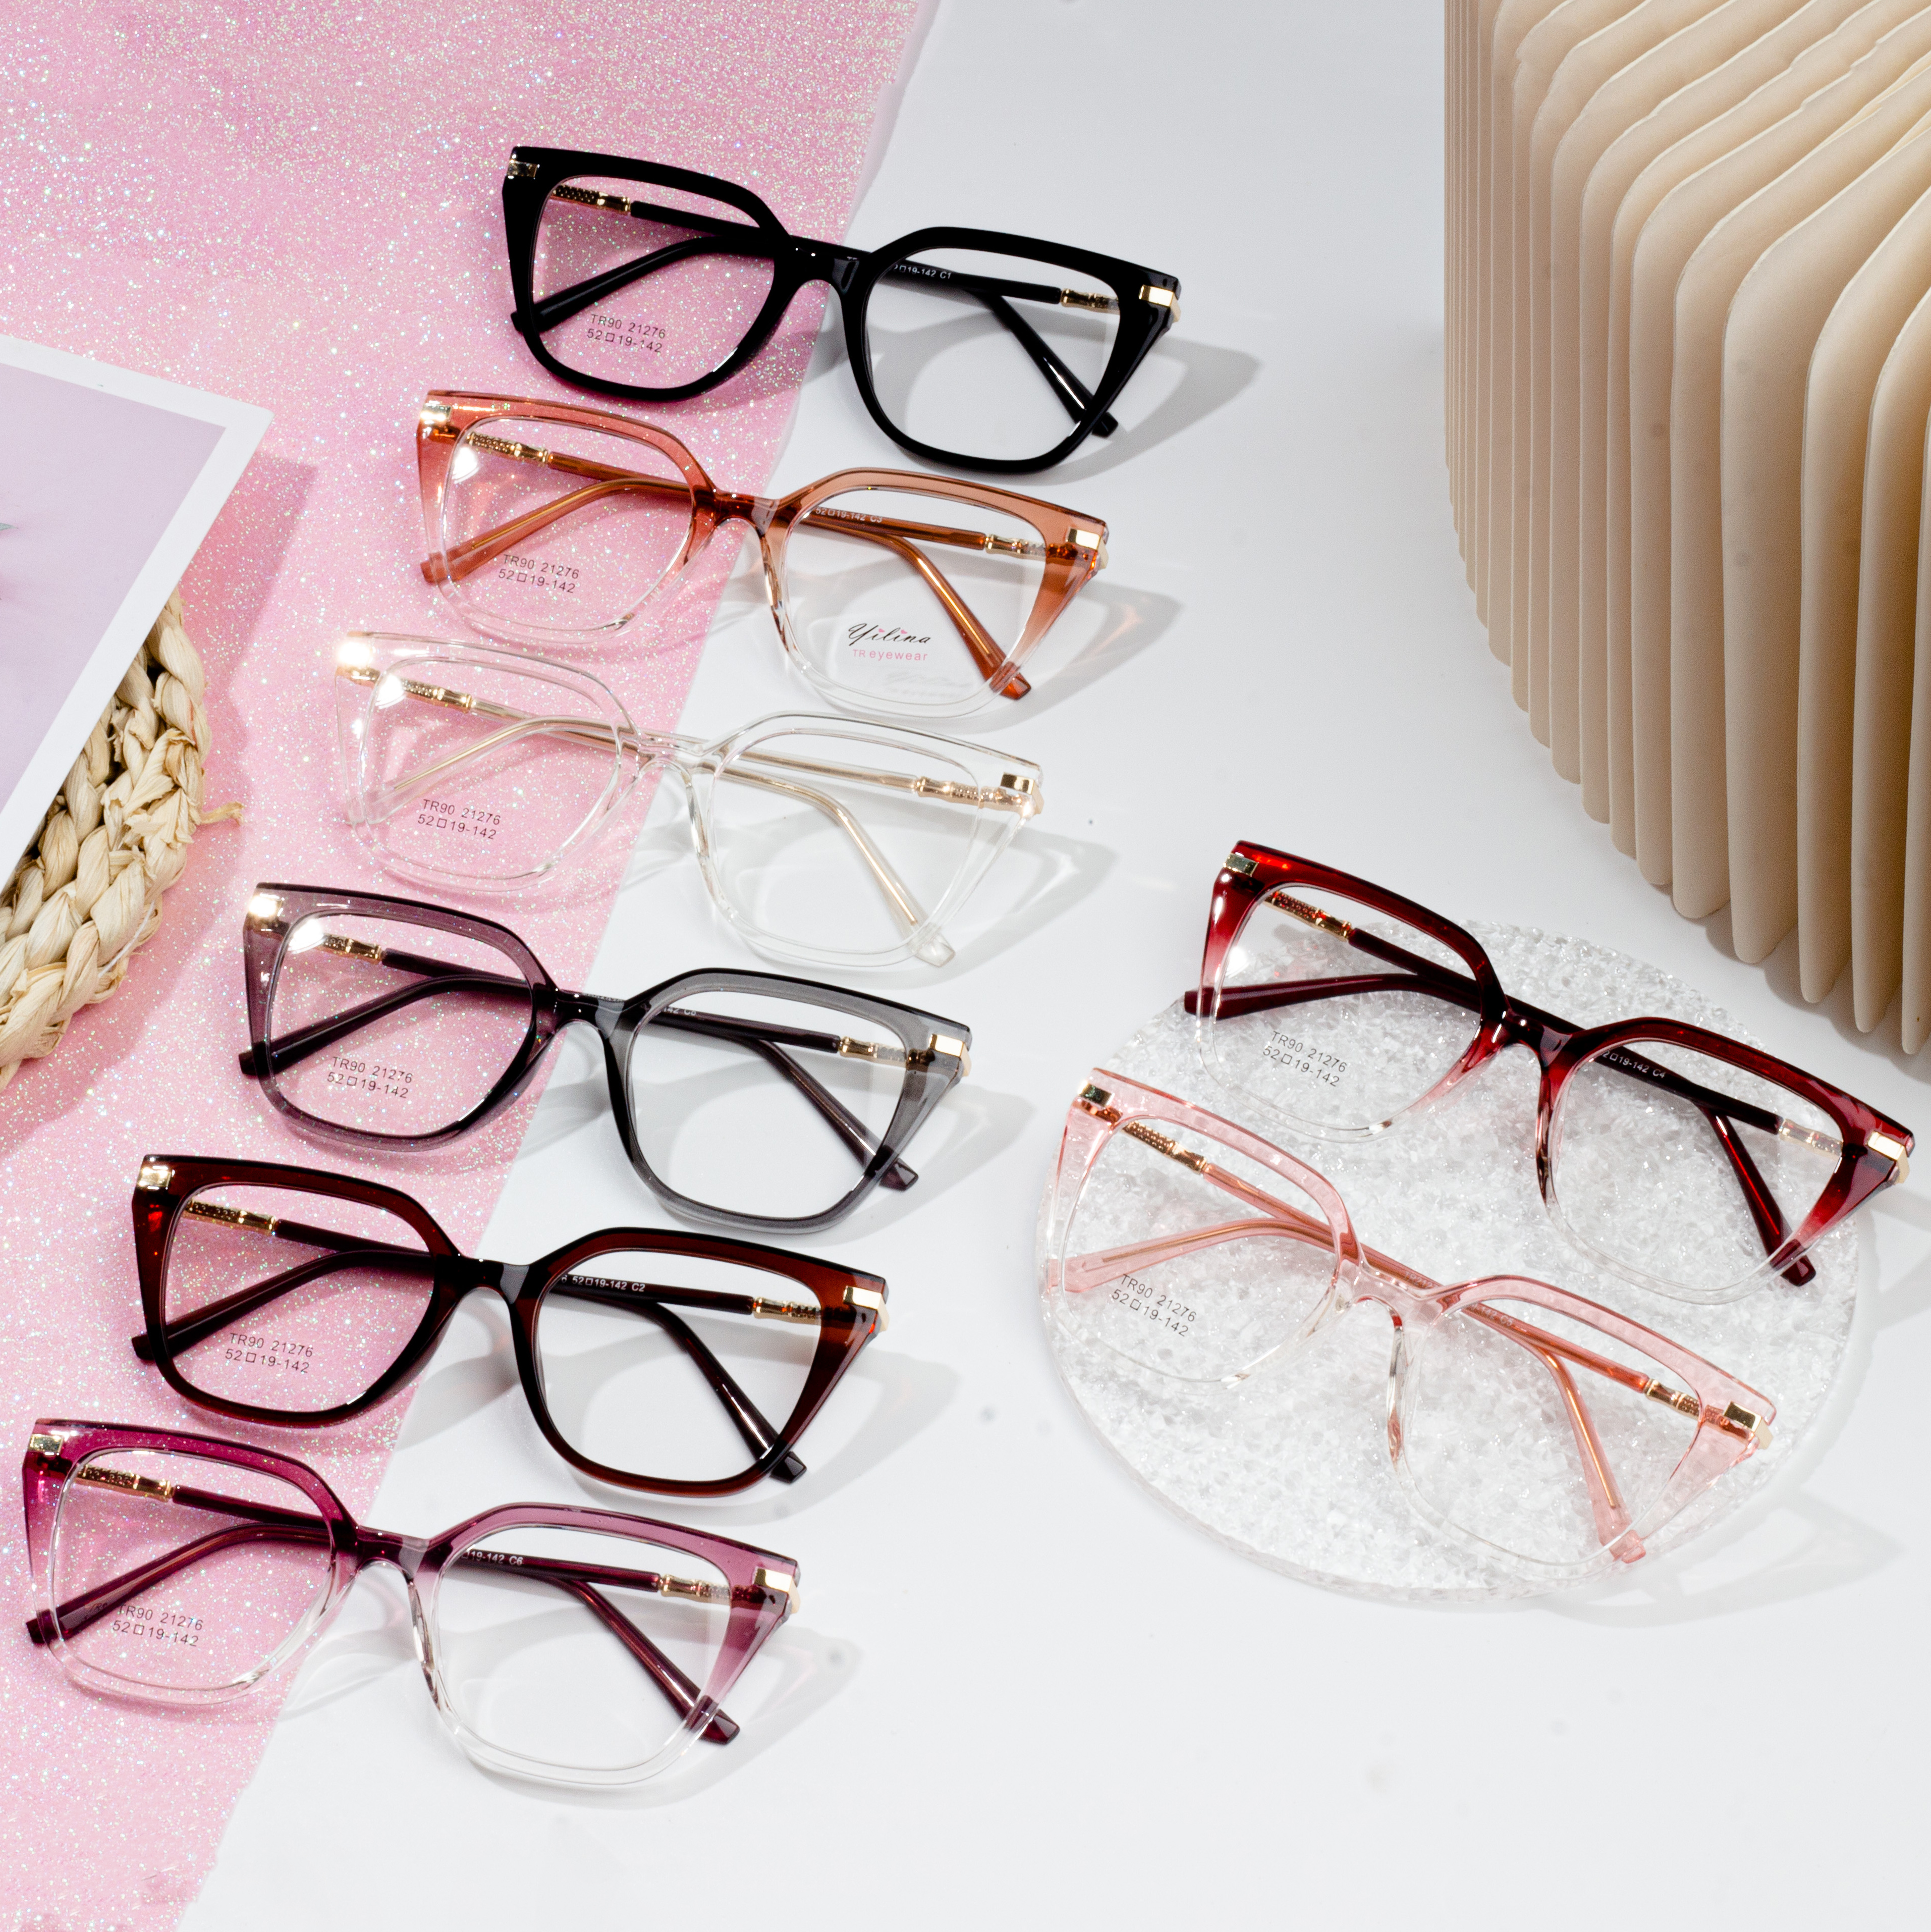 Kacamata optik wanita TR90 klasik